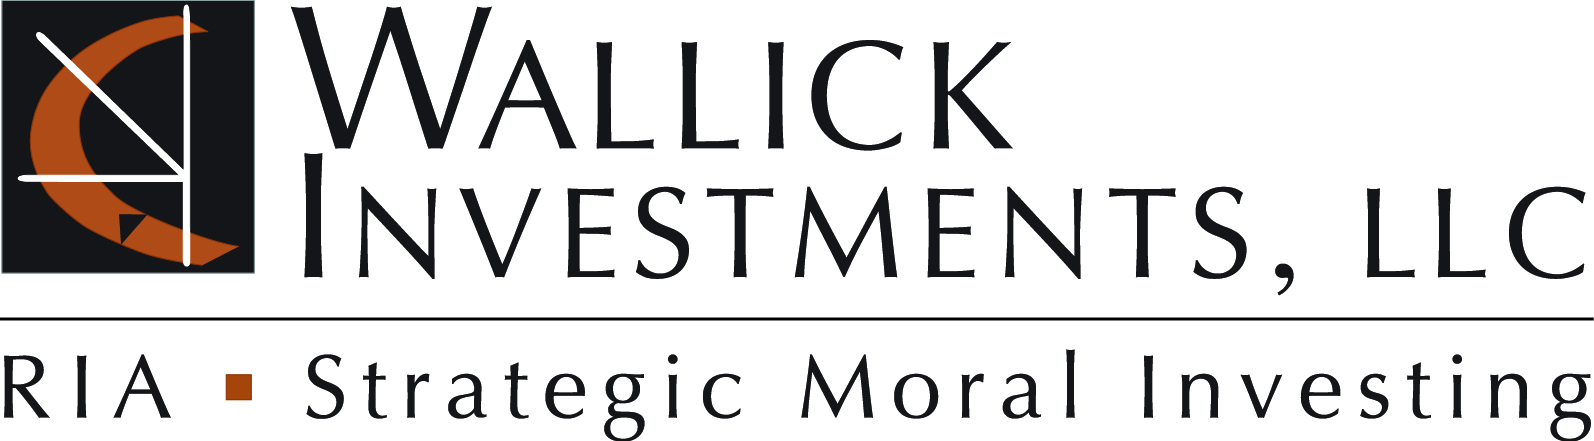 Wallick Investments, LLC